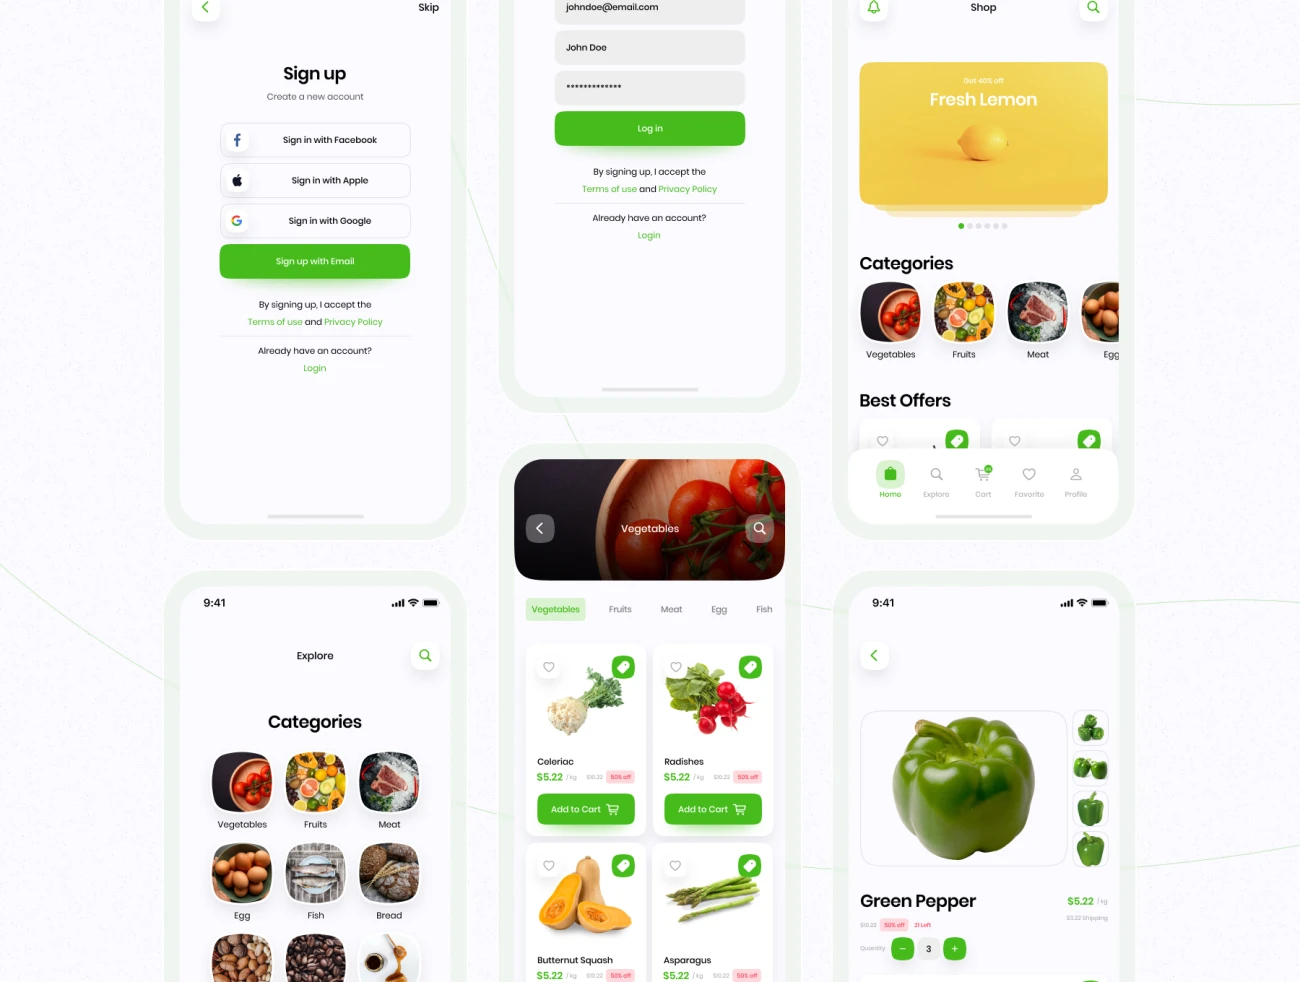 43屏生鲜蔬菜生活用品采购应用设计套件 Healthy Mart - Grocery App UI Kit-UI/UX、ui套件、主页、卡片式、应用、支付、注册、登录页、网购、详情、预订-到位啦UI